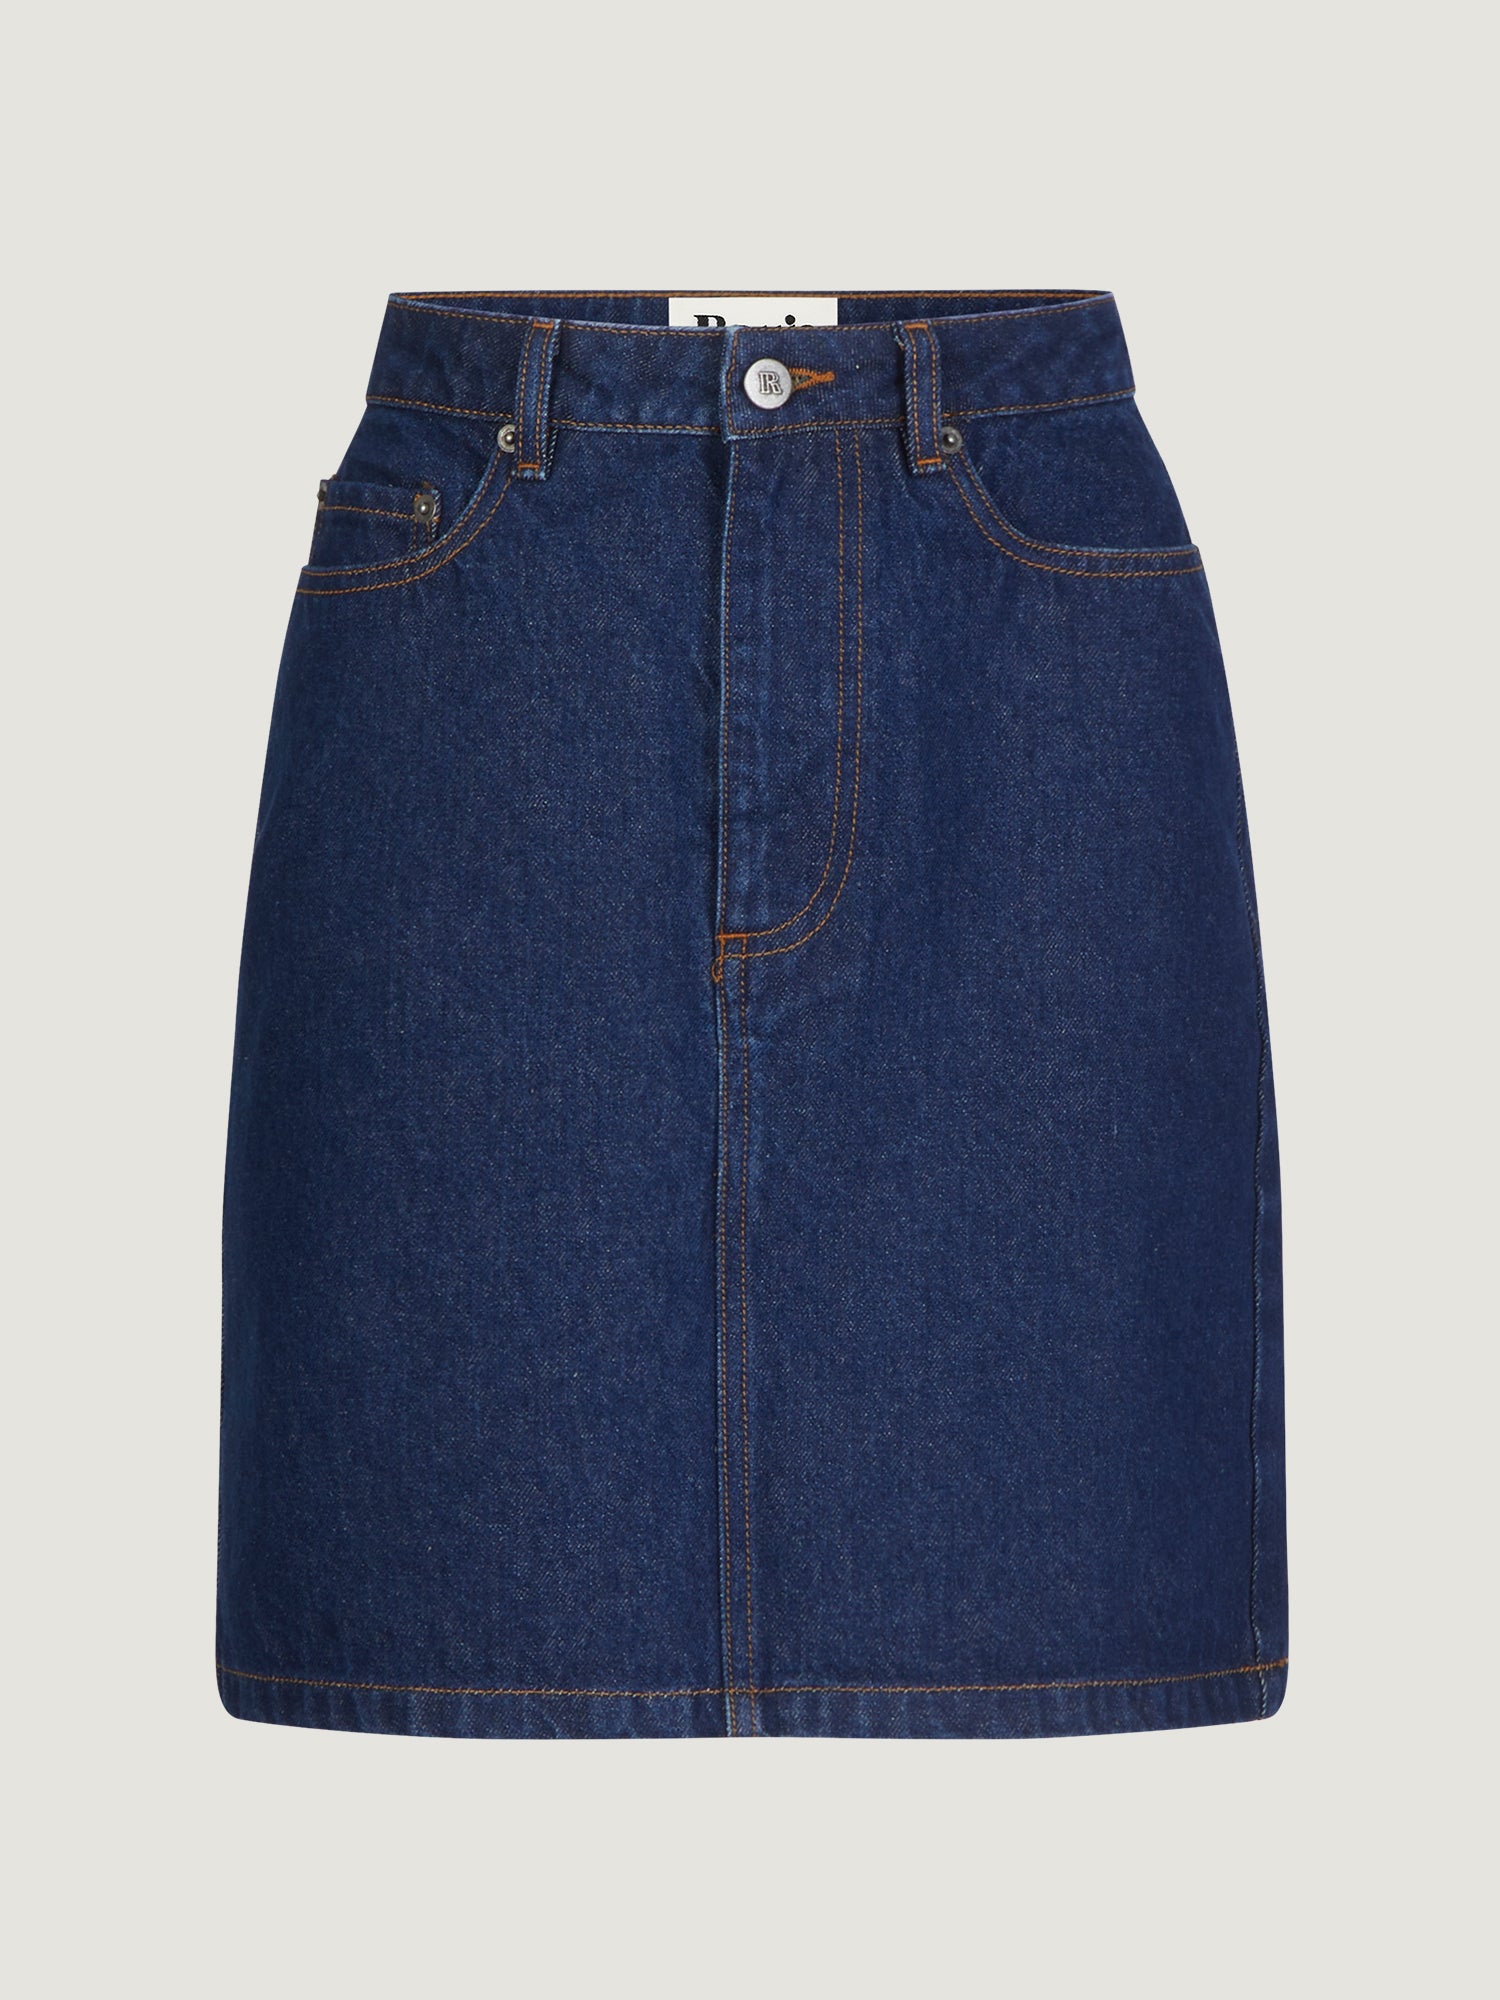 Short skirt in plain raw denim | Rouje